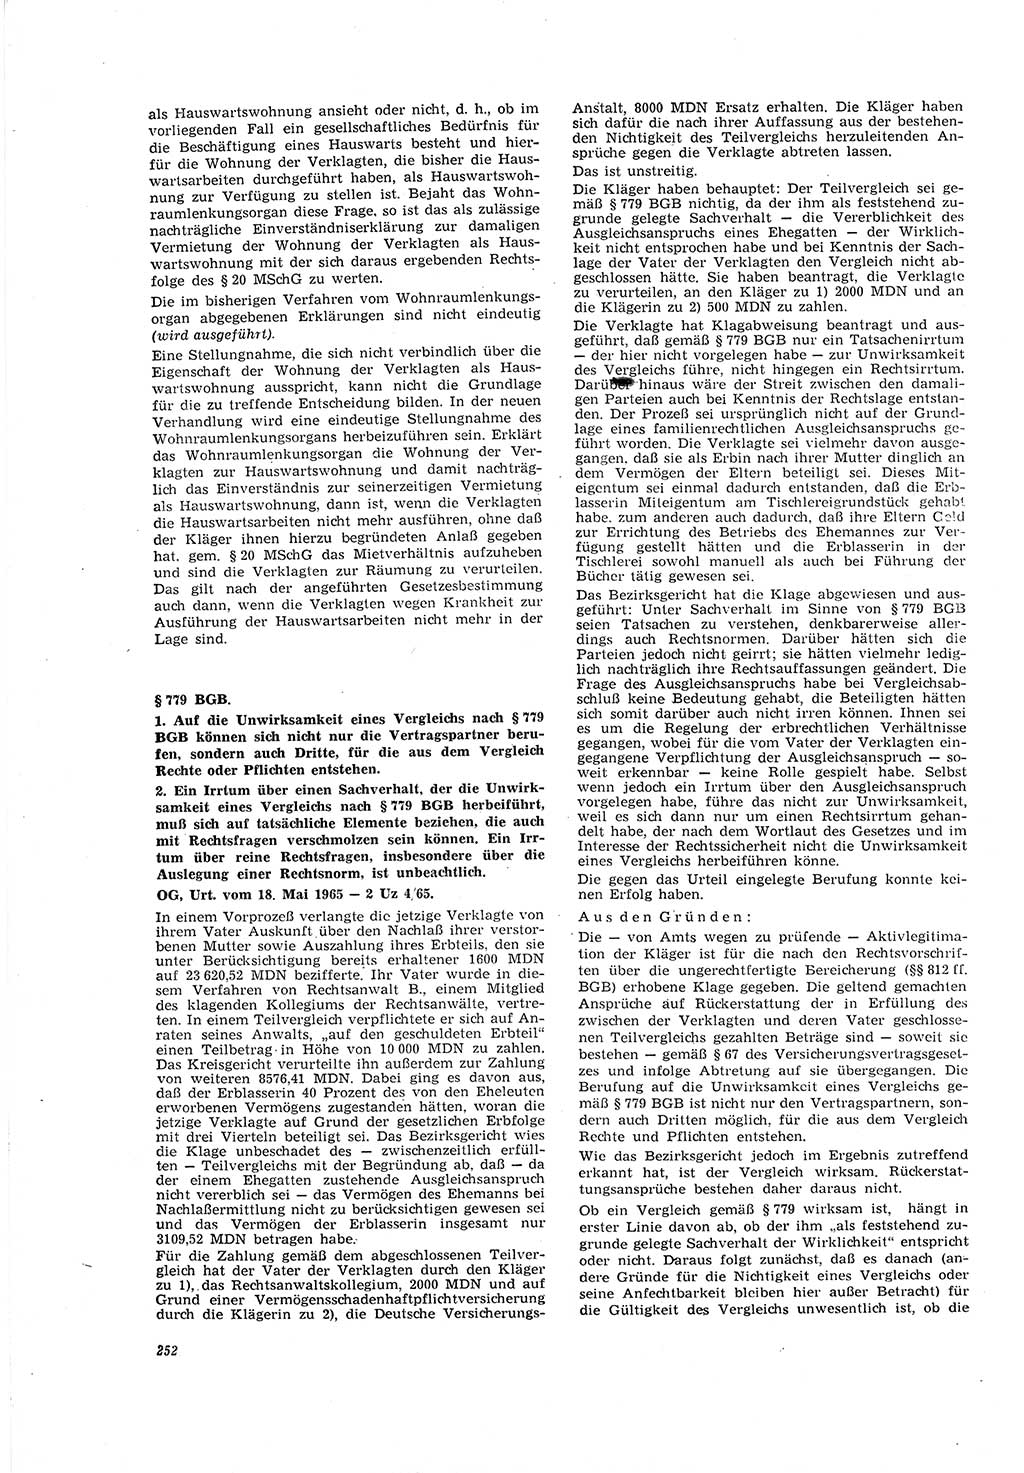 Neue Justiz (NJ), Zeitschrift für Recht und Rechtswissenschaft [Deutsche Demokratische Republik (DDR)], 20. Jahrgang 1966, Seite 252 (NJ DDR 1966, S. 252)